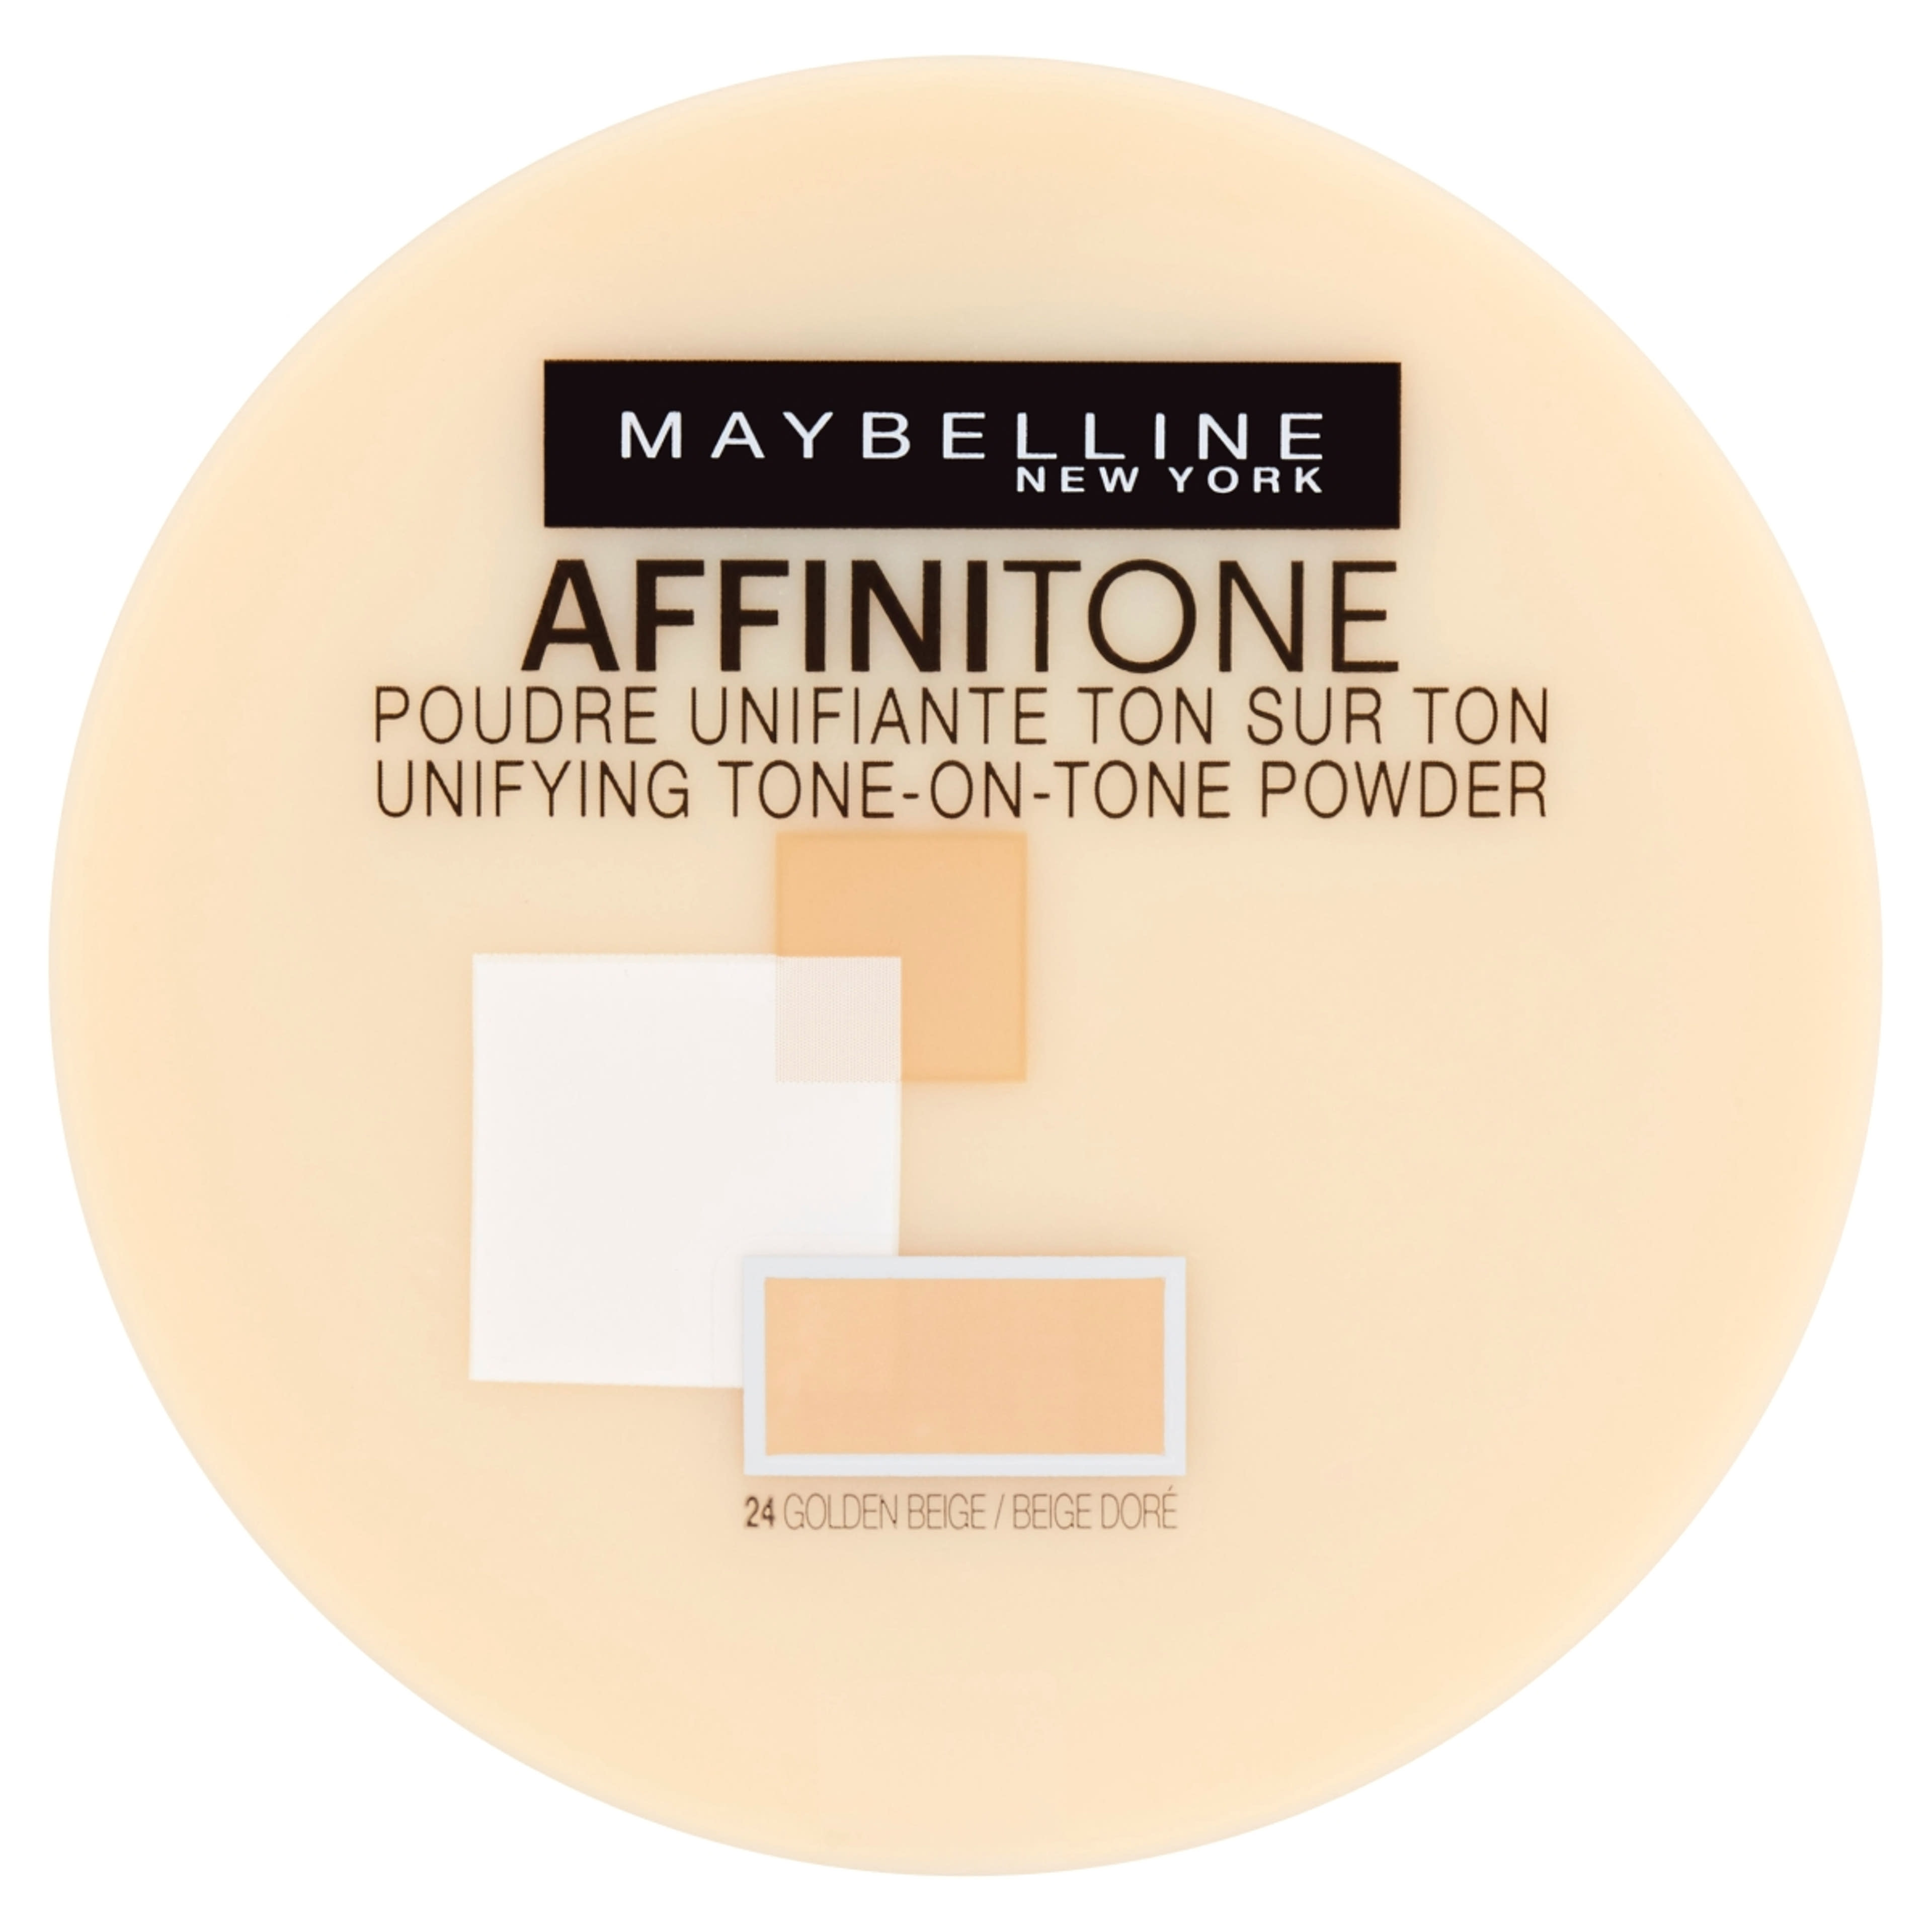 Maybelline Affinitone púder, 24 Golden Beige - 1 db